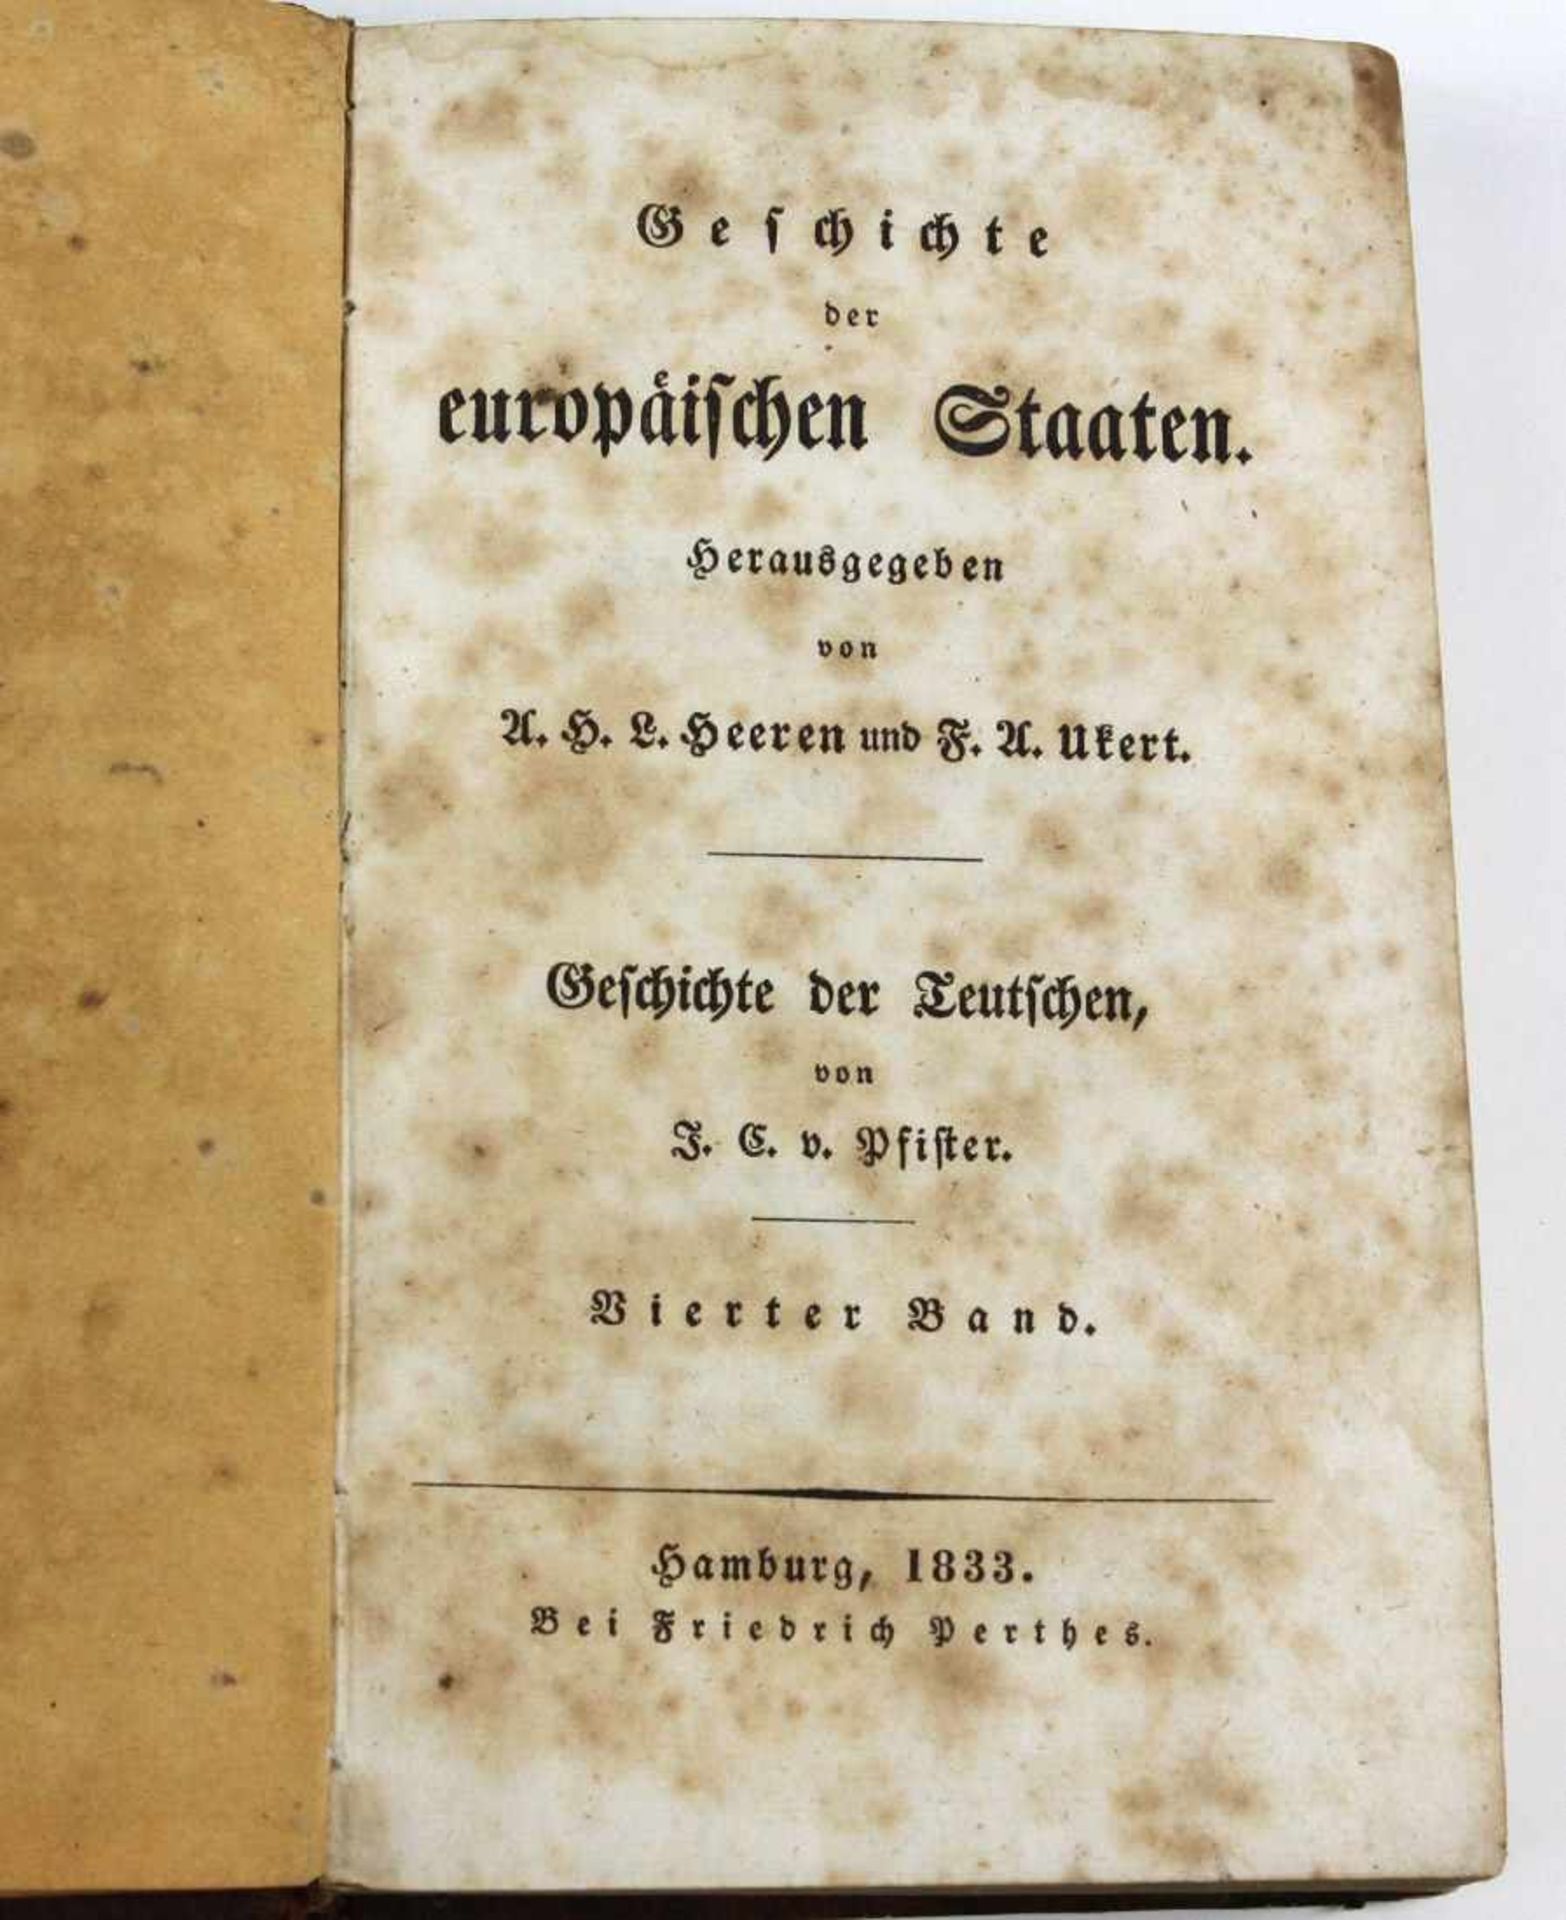 Geschichte der europäischen Staaten von 1833 hrsg. von A.H.L.Heeren und F.A.Ukert, 4.Band '